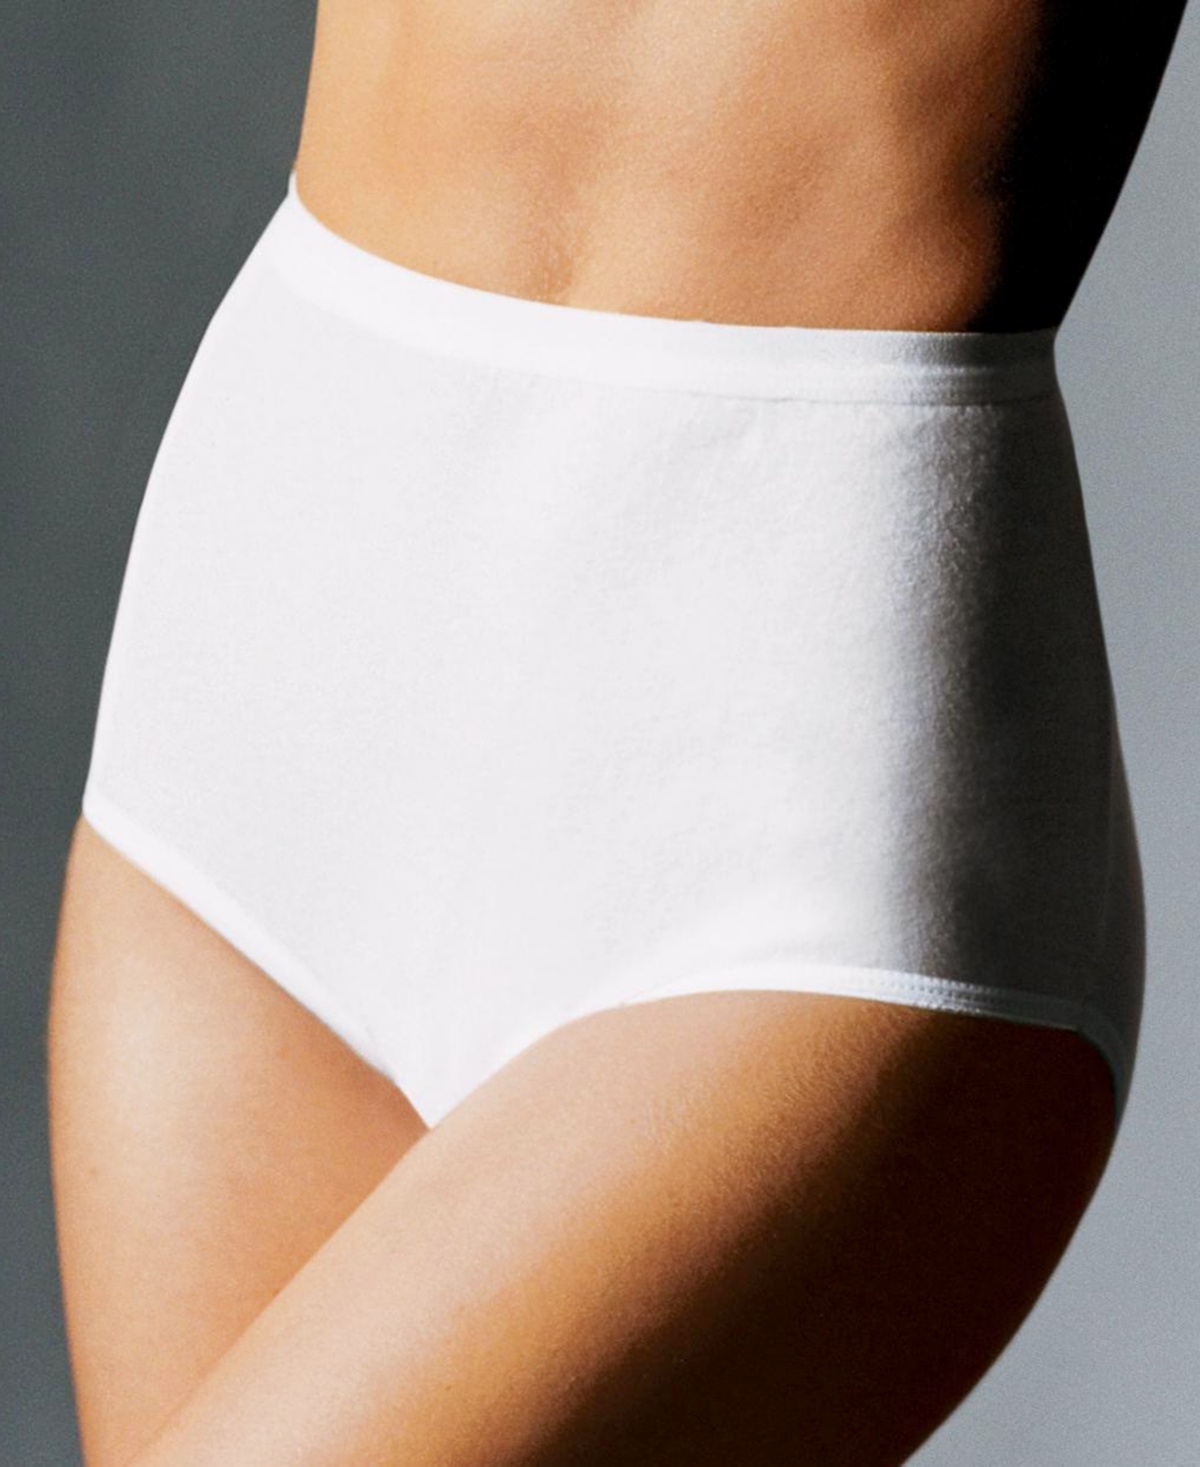 Women's Extra Firm Tummy-Control Seamless Brief Underwear 2 Pack X245